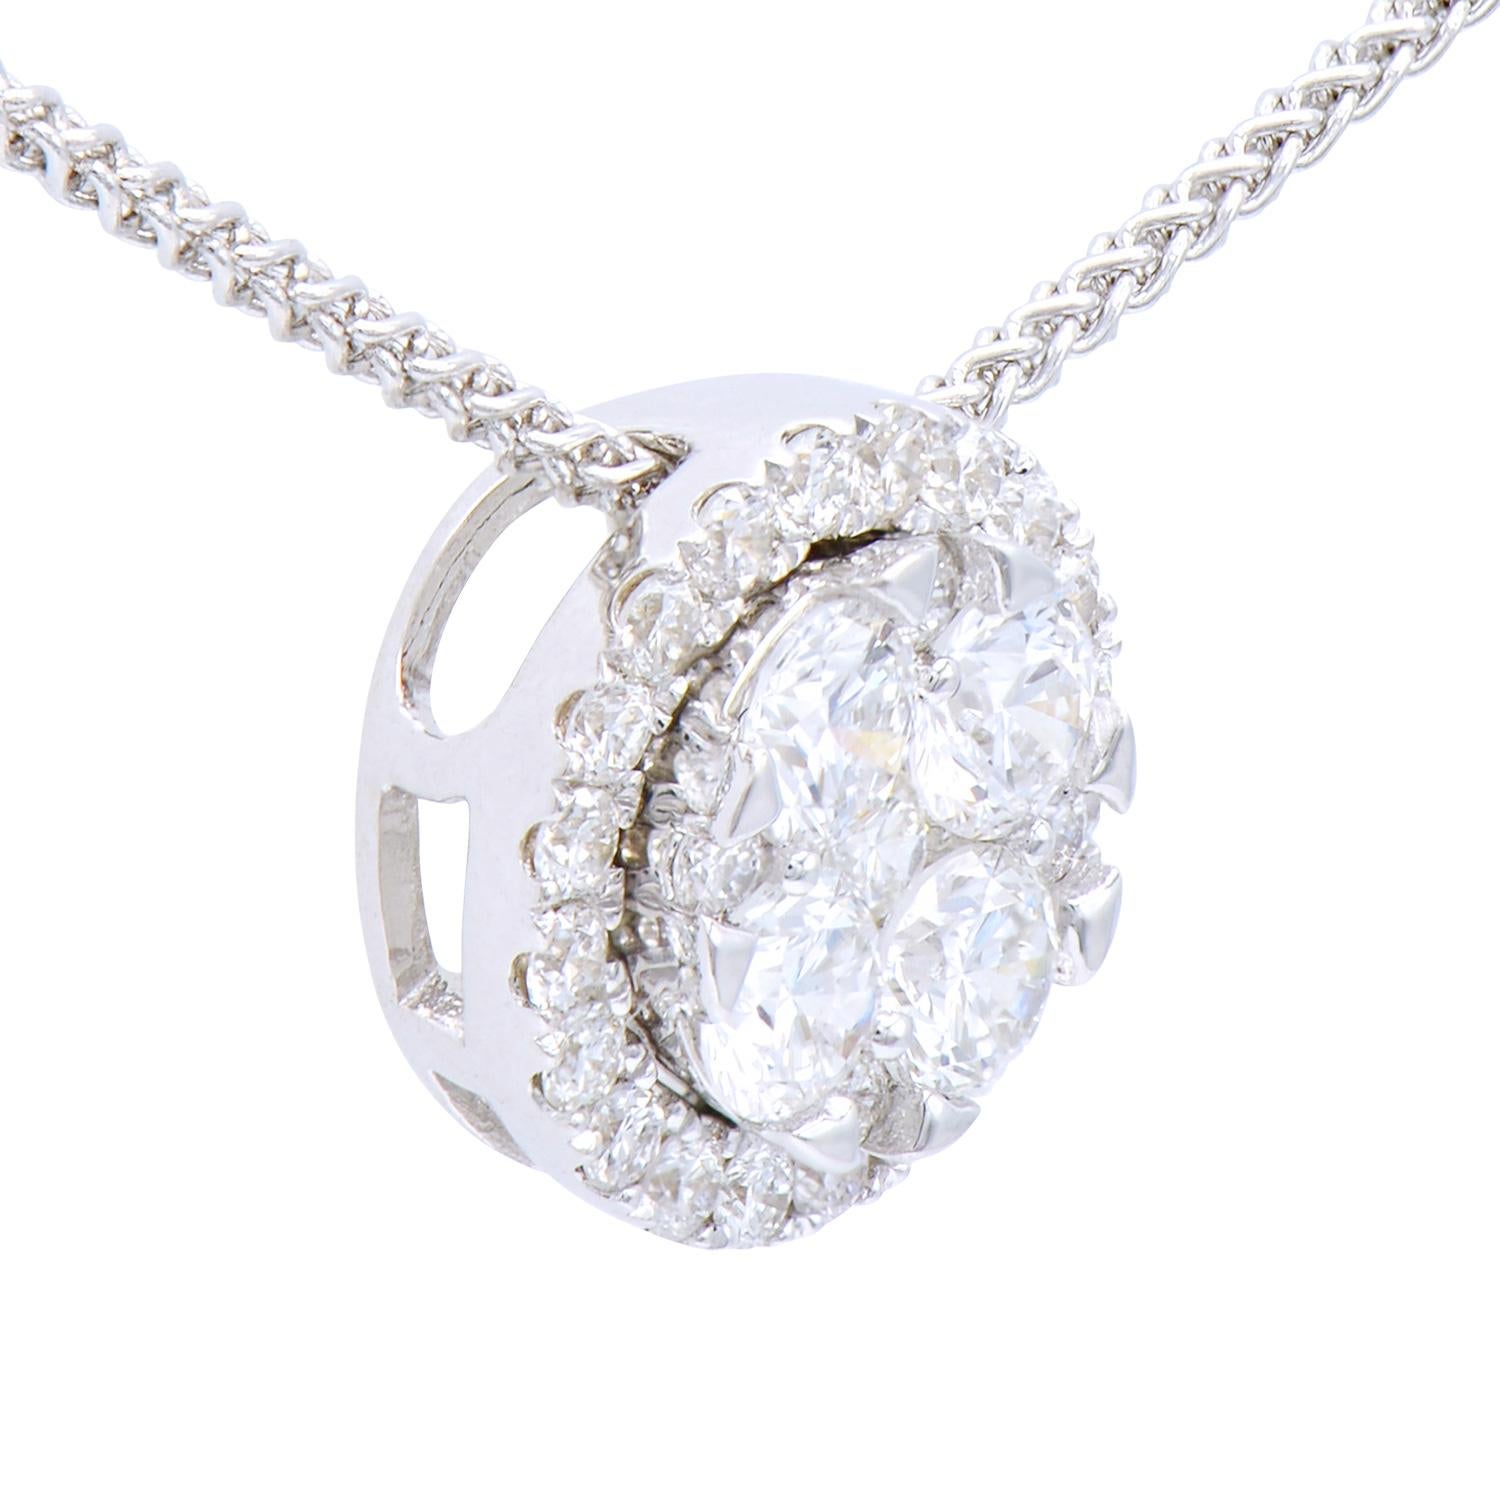 Ce magnifique pendentif en forme de cercle est composé de 4 diamants de 0,35 carats entourés de 25 diamants ronds de 0,2 carats, tous de couleur VS2, G. Elles sont serties dans 1,0 gramme d'or blanc 18 carats avec une chaîne également 18 carats. Ce